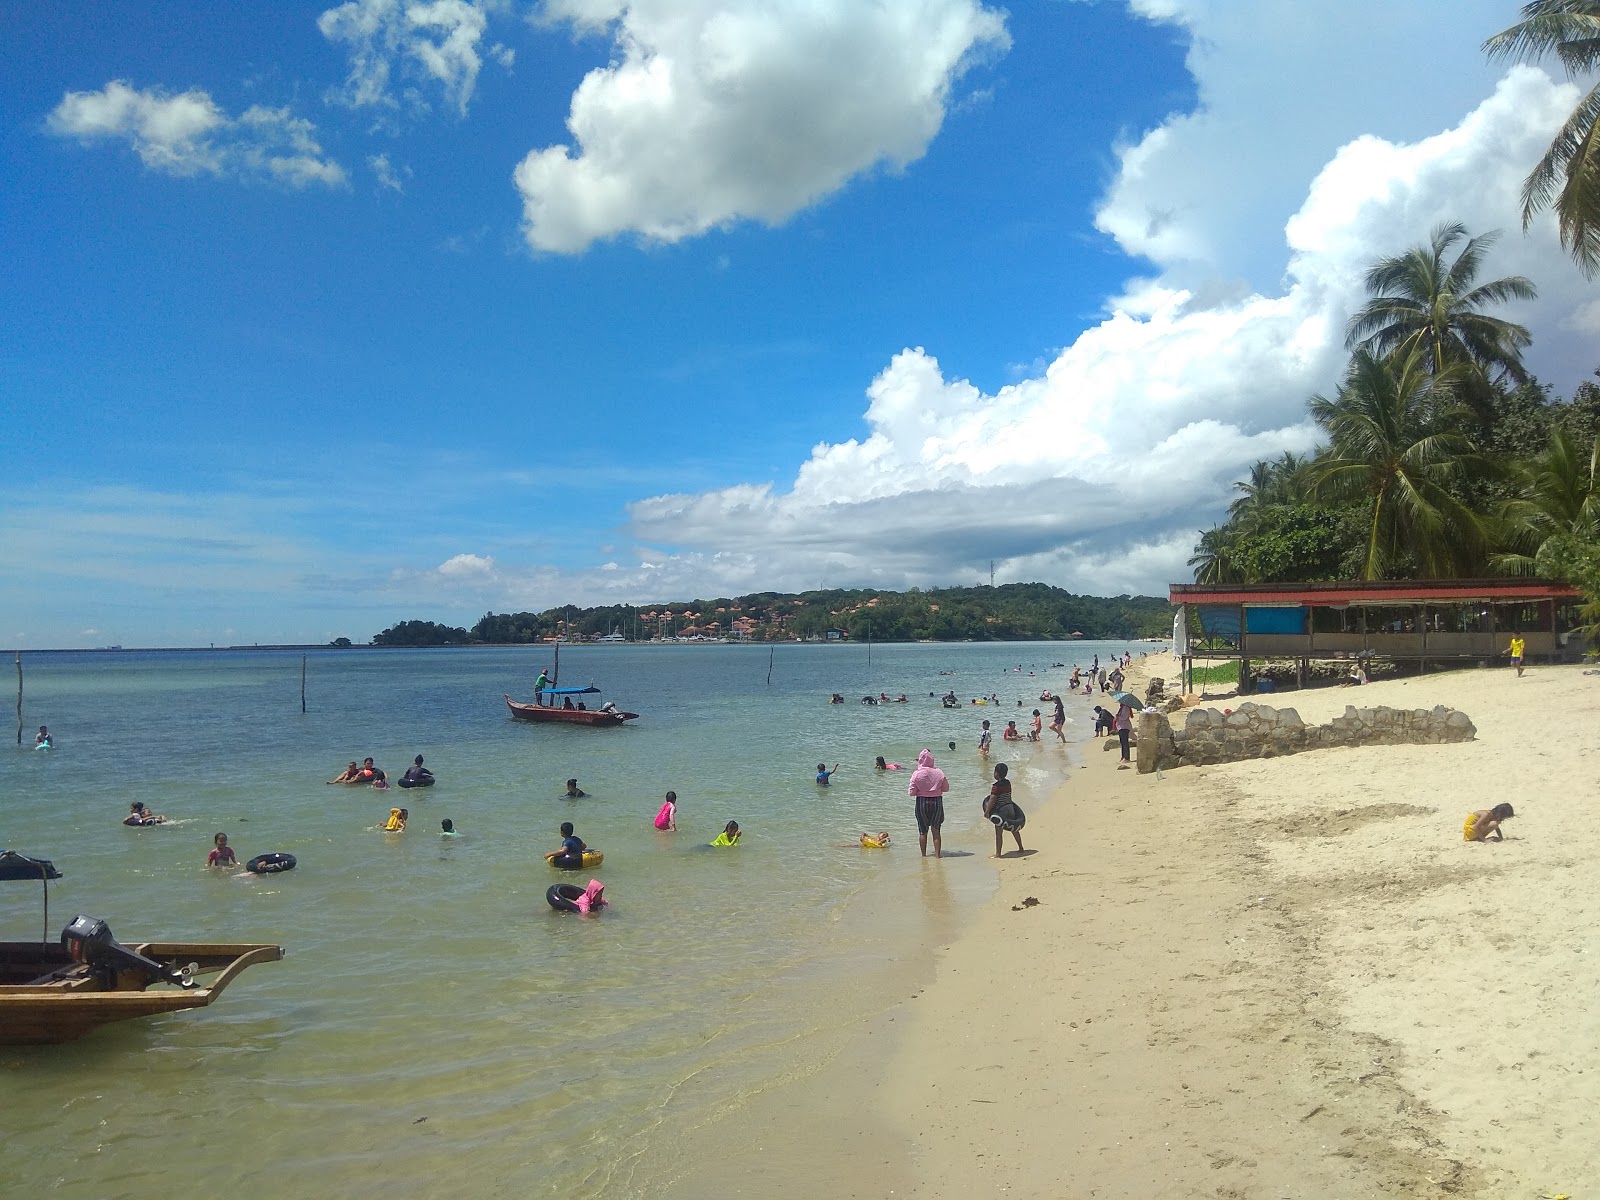 Nongsa Riau Beach'in fotoğrafı geniş plaj ile birlikte